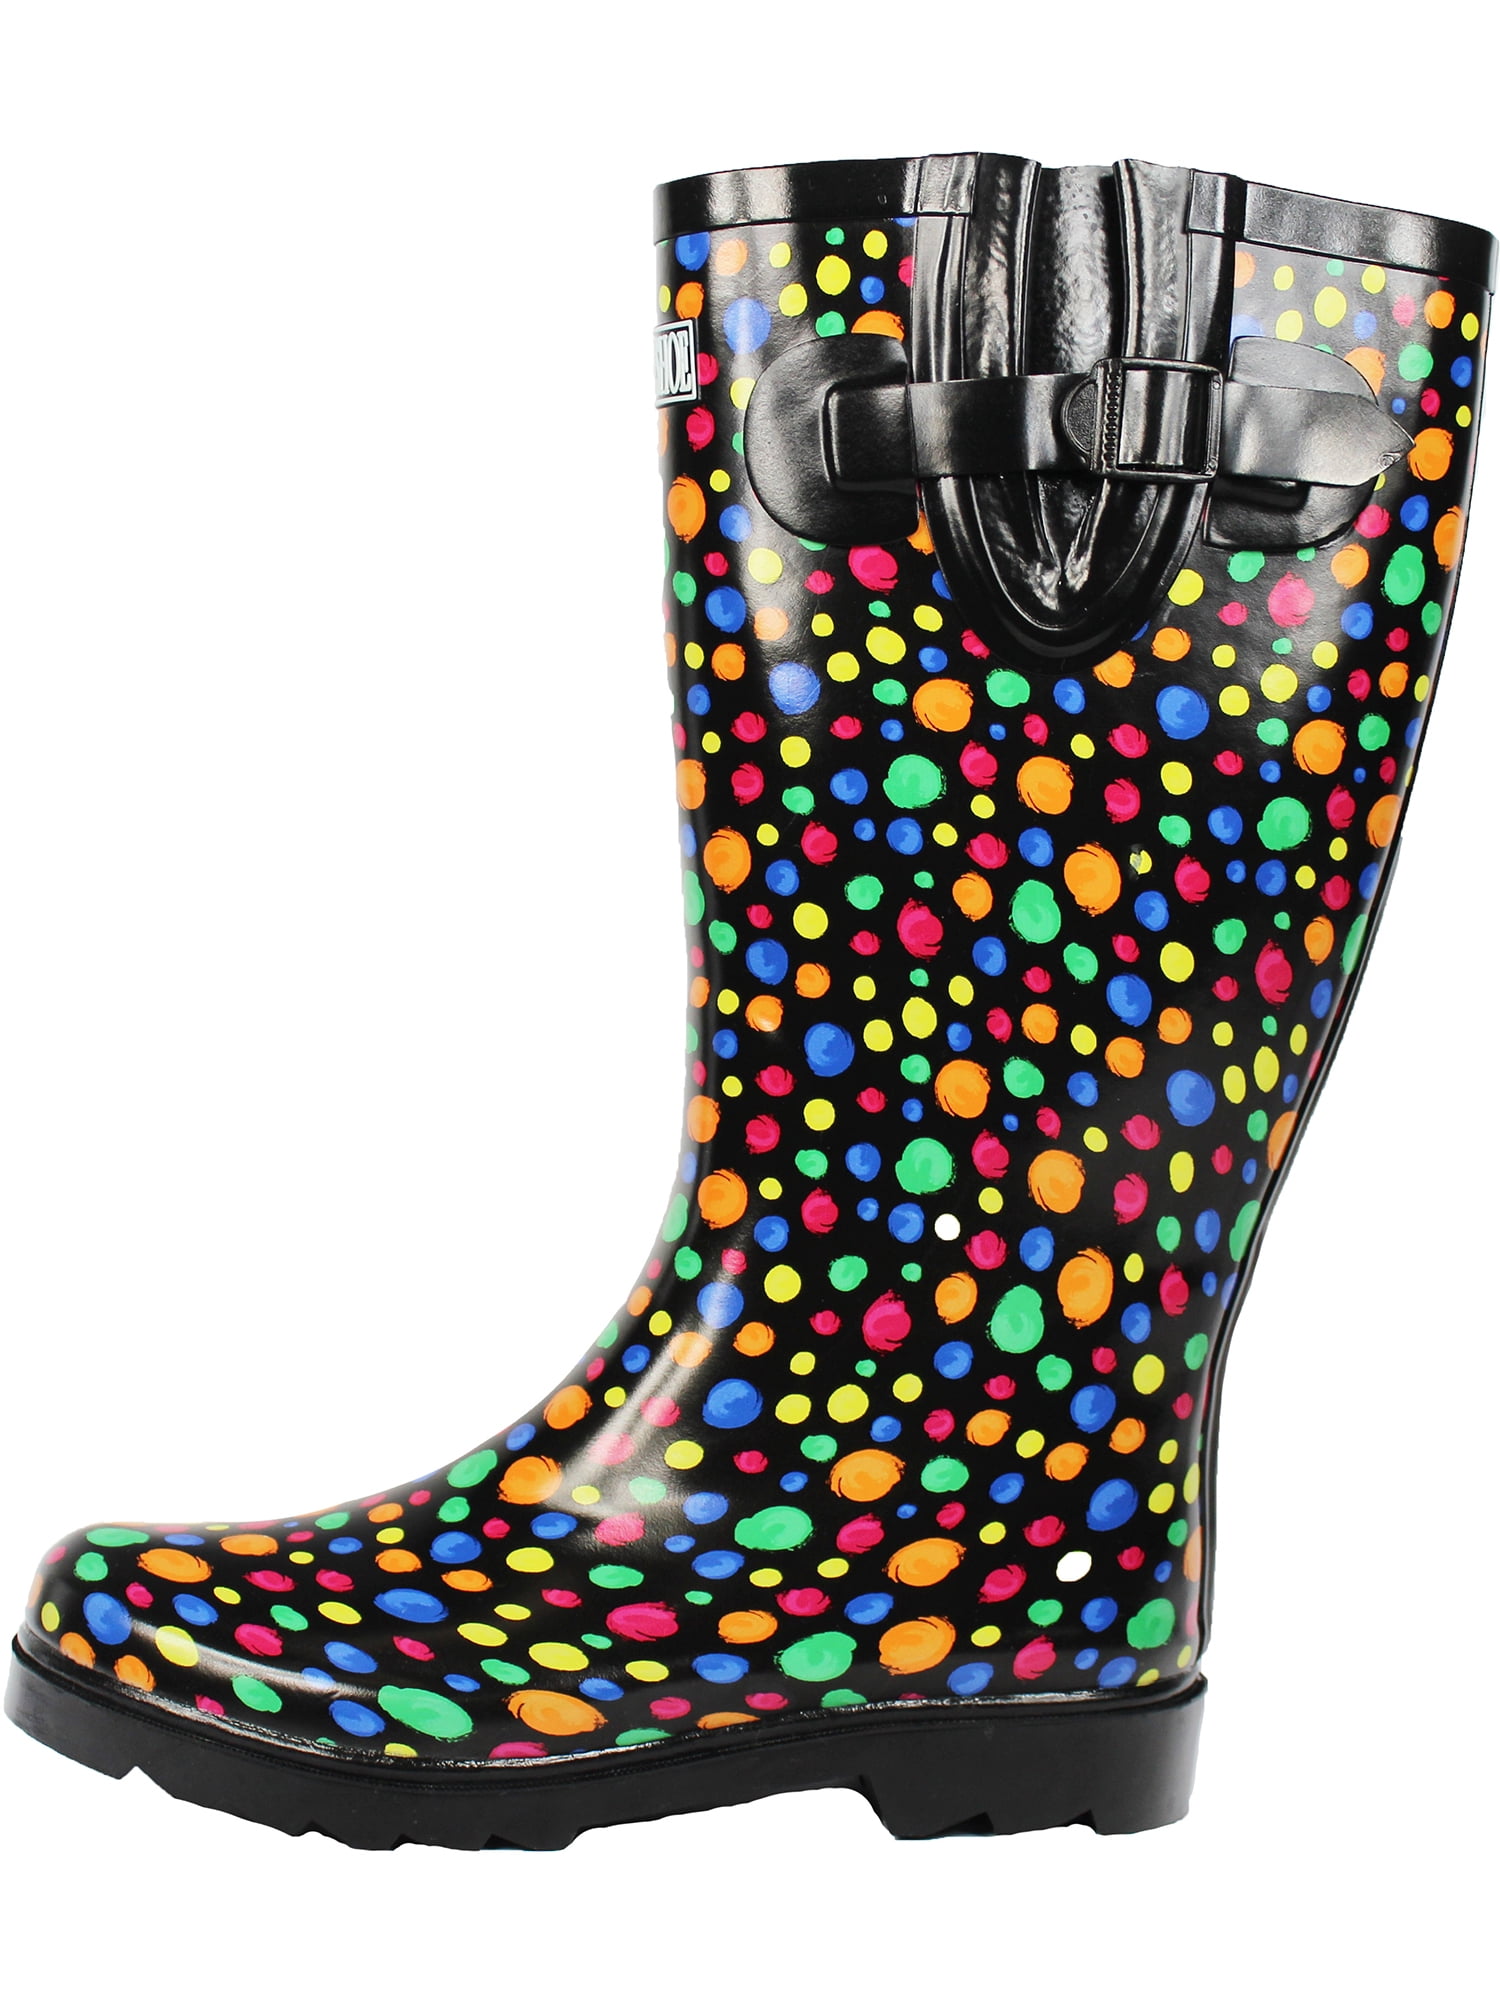 Rain Boots for Women Floral Print Mid Calf Slip on Water Shoes Outdoor Garden Waterproof Work Booties 